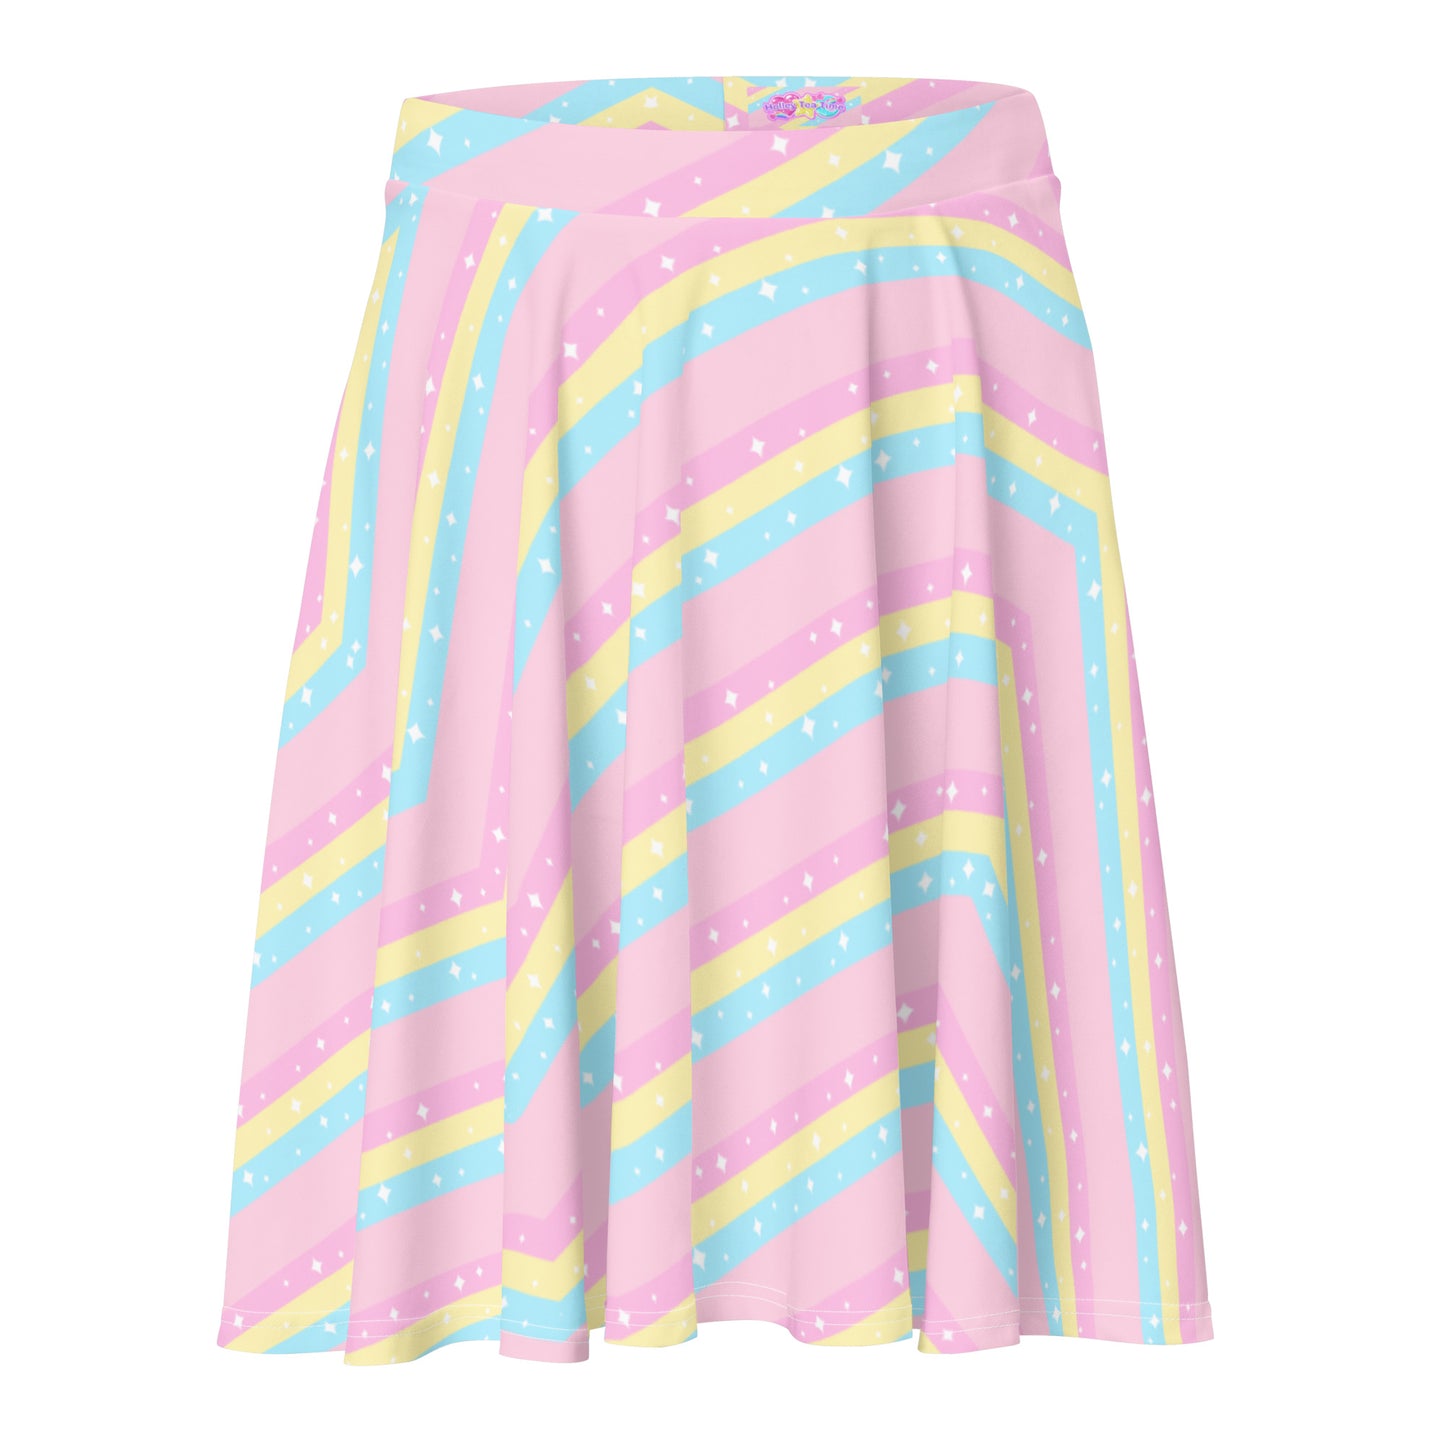 Teatime Fantasy Pink Rainbow Skater Skirt